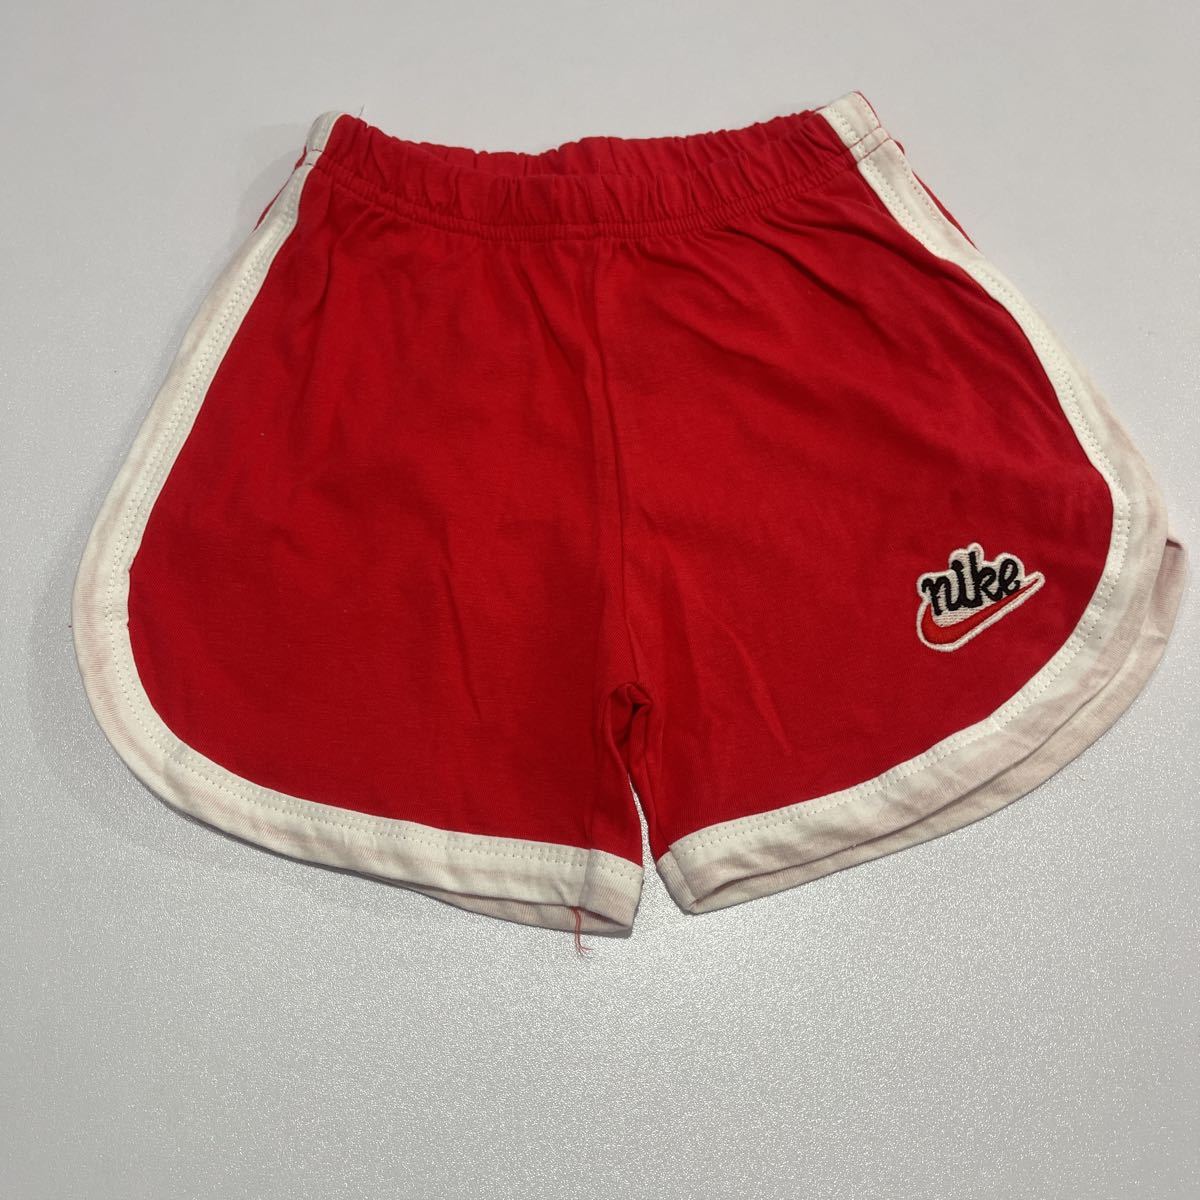  новый товар  неиспользованный товар  / модный  　 детский  укороченные брюки / красный 110 сантиметр 